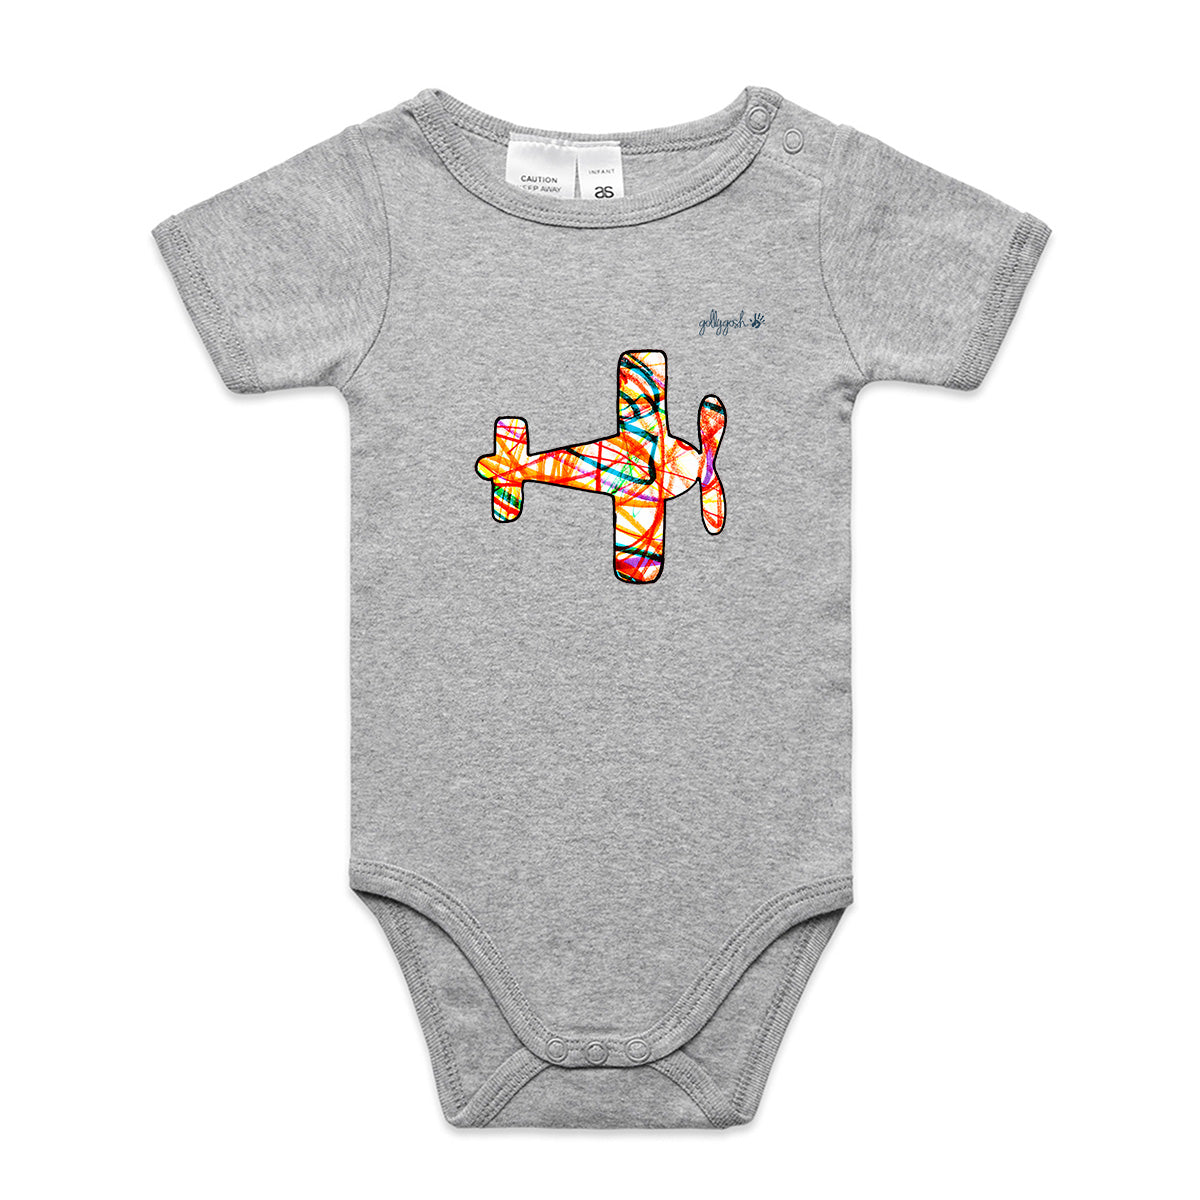 Aeroplane - Infant Baby Grow